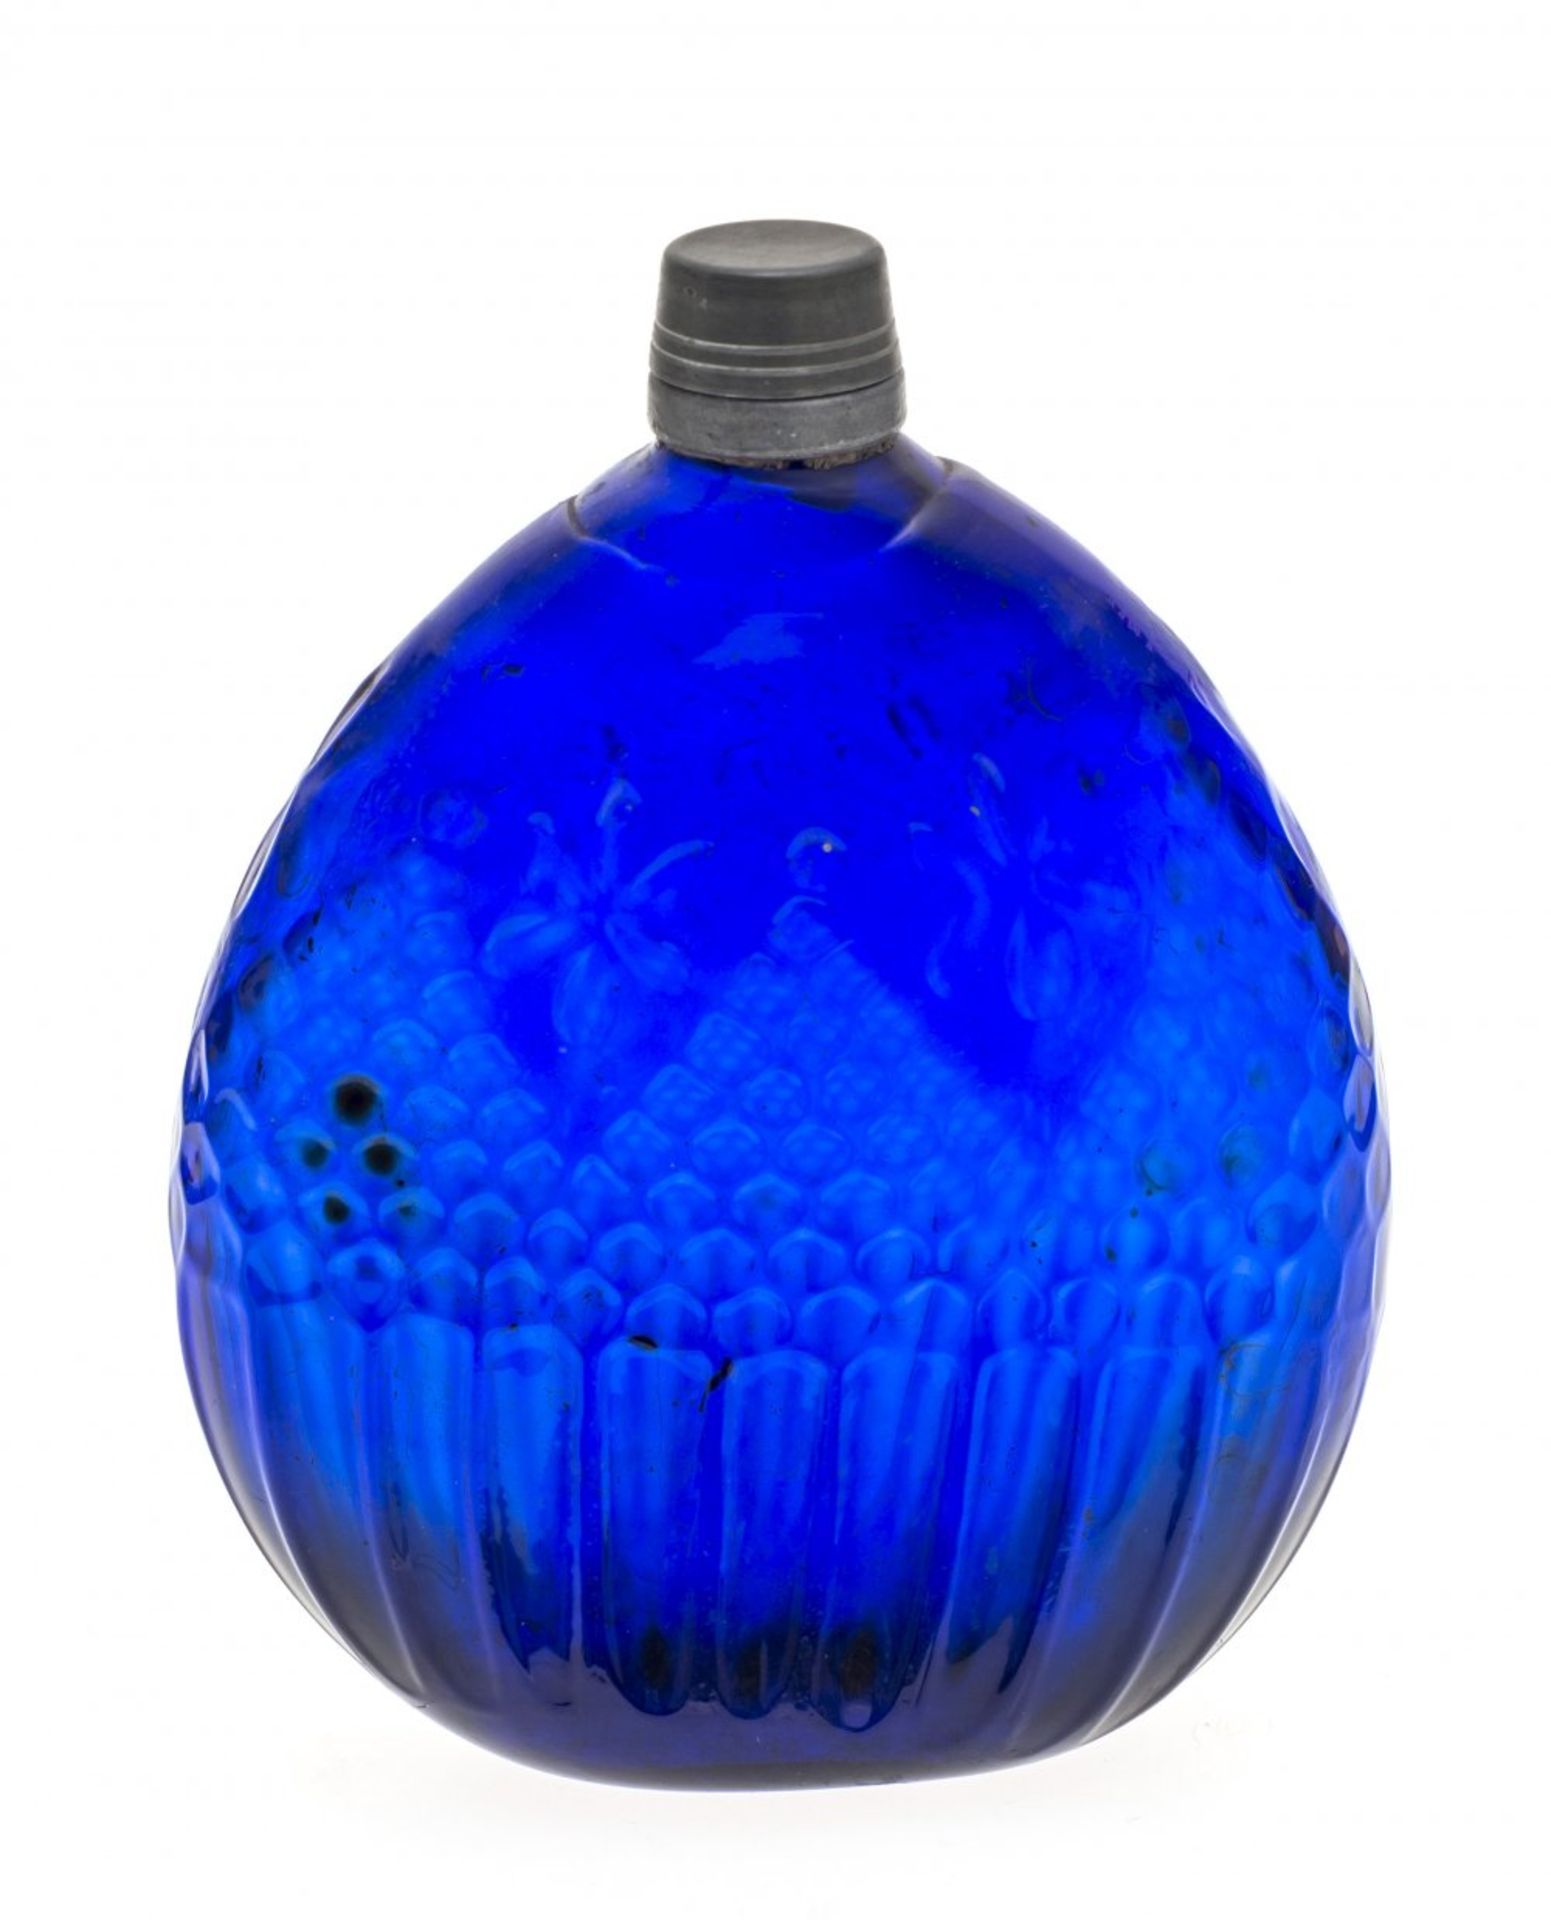 PlattflascheSüddeutsch. Blaues Glas, Zinnschraubverschluss. H. 14 cm.Platt bottleSüddeutsch. Blue